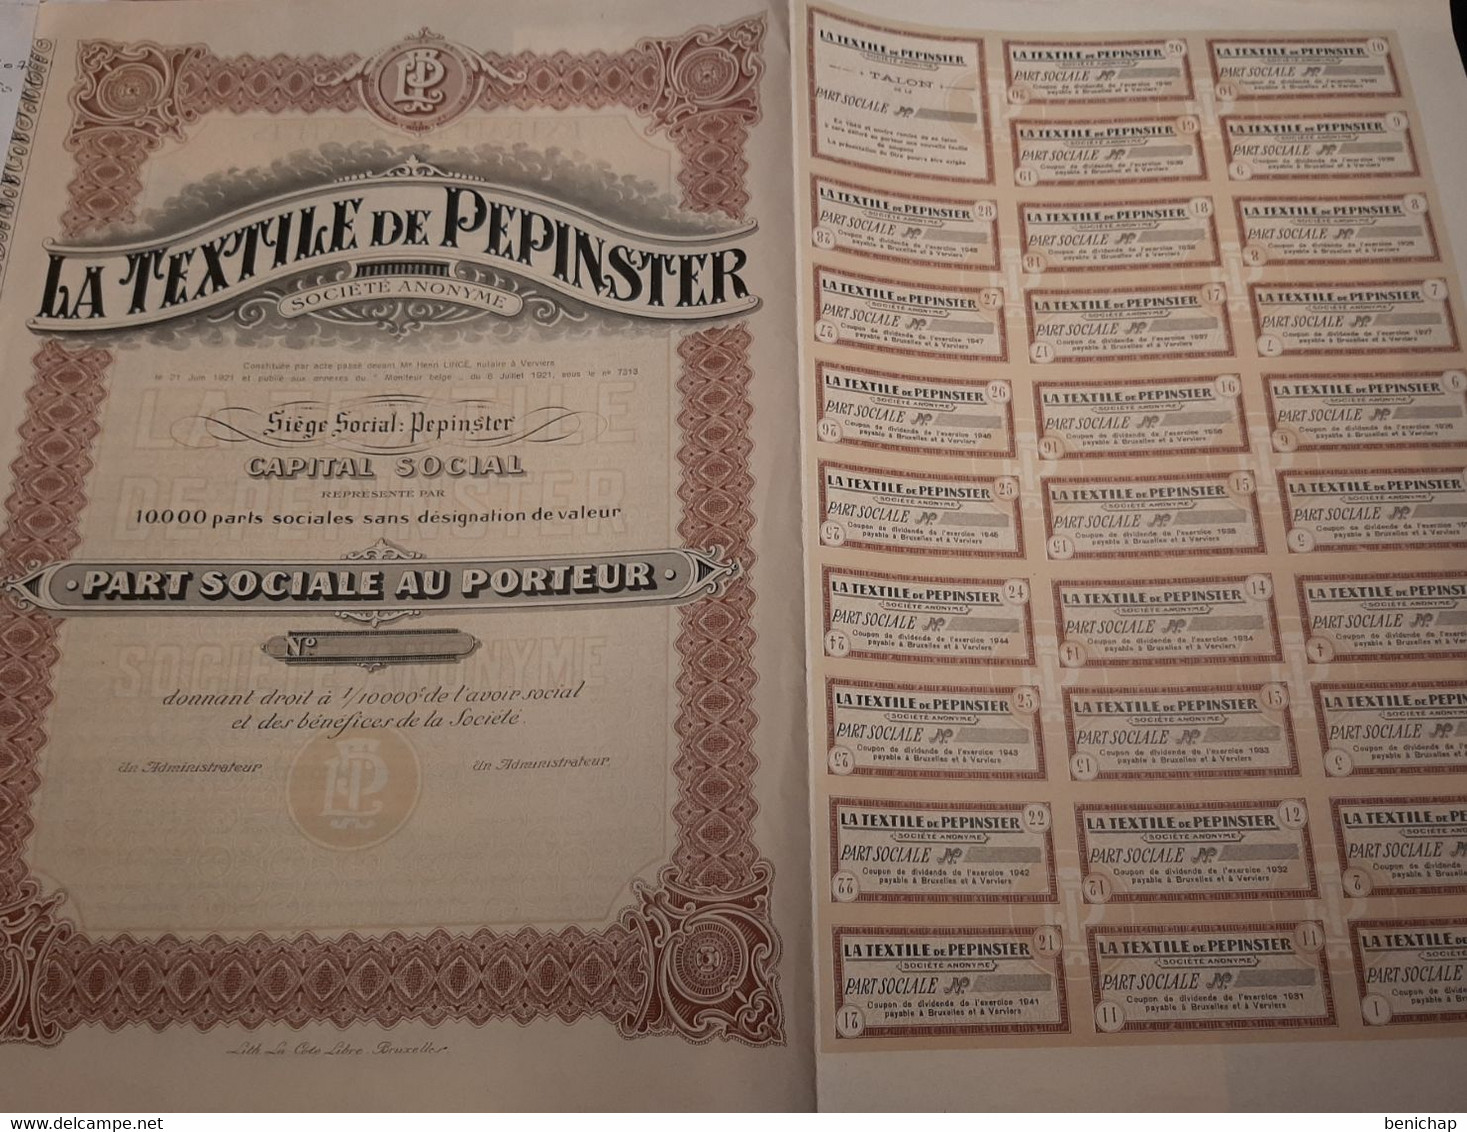 La Textile De Pepinster S.A. - Part Sociale Au Porteur - Pepinster 6 Juillet 1921. - Textile